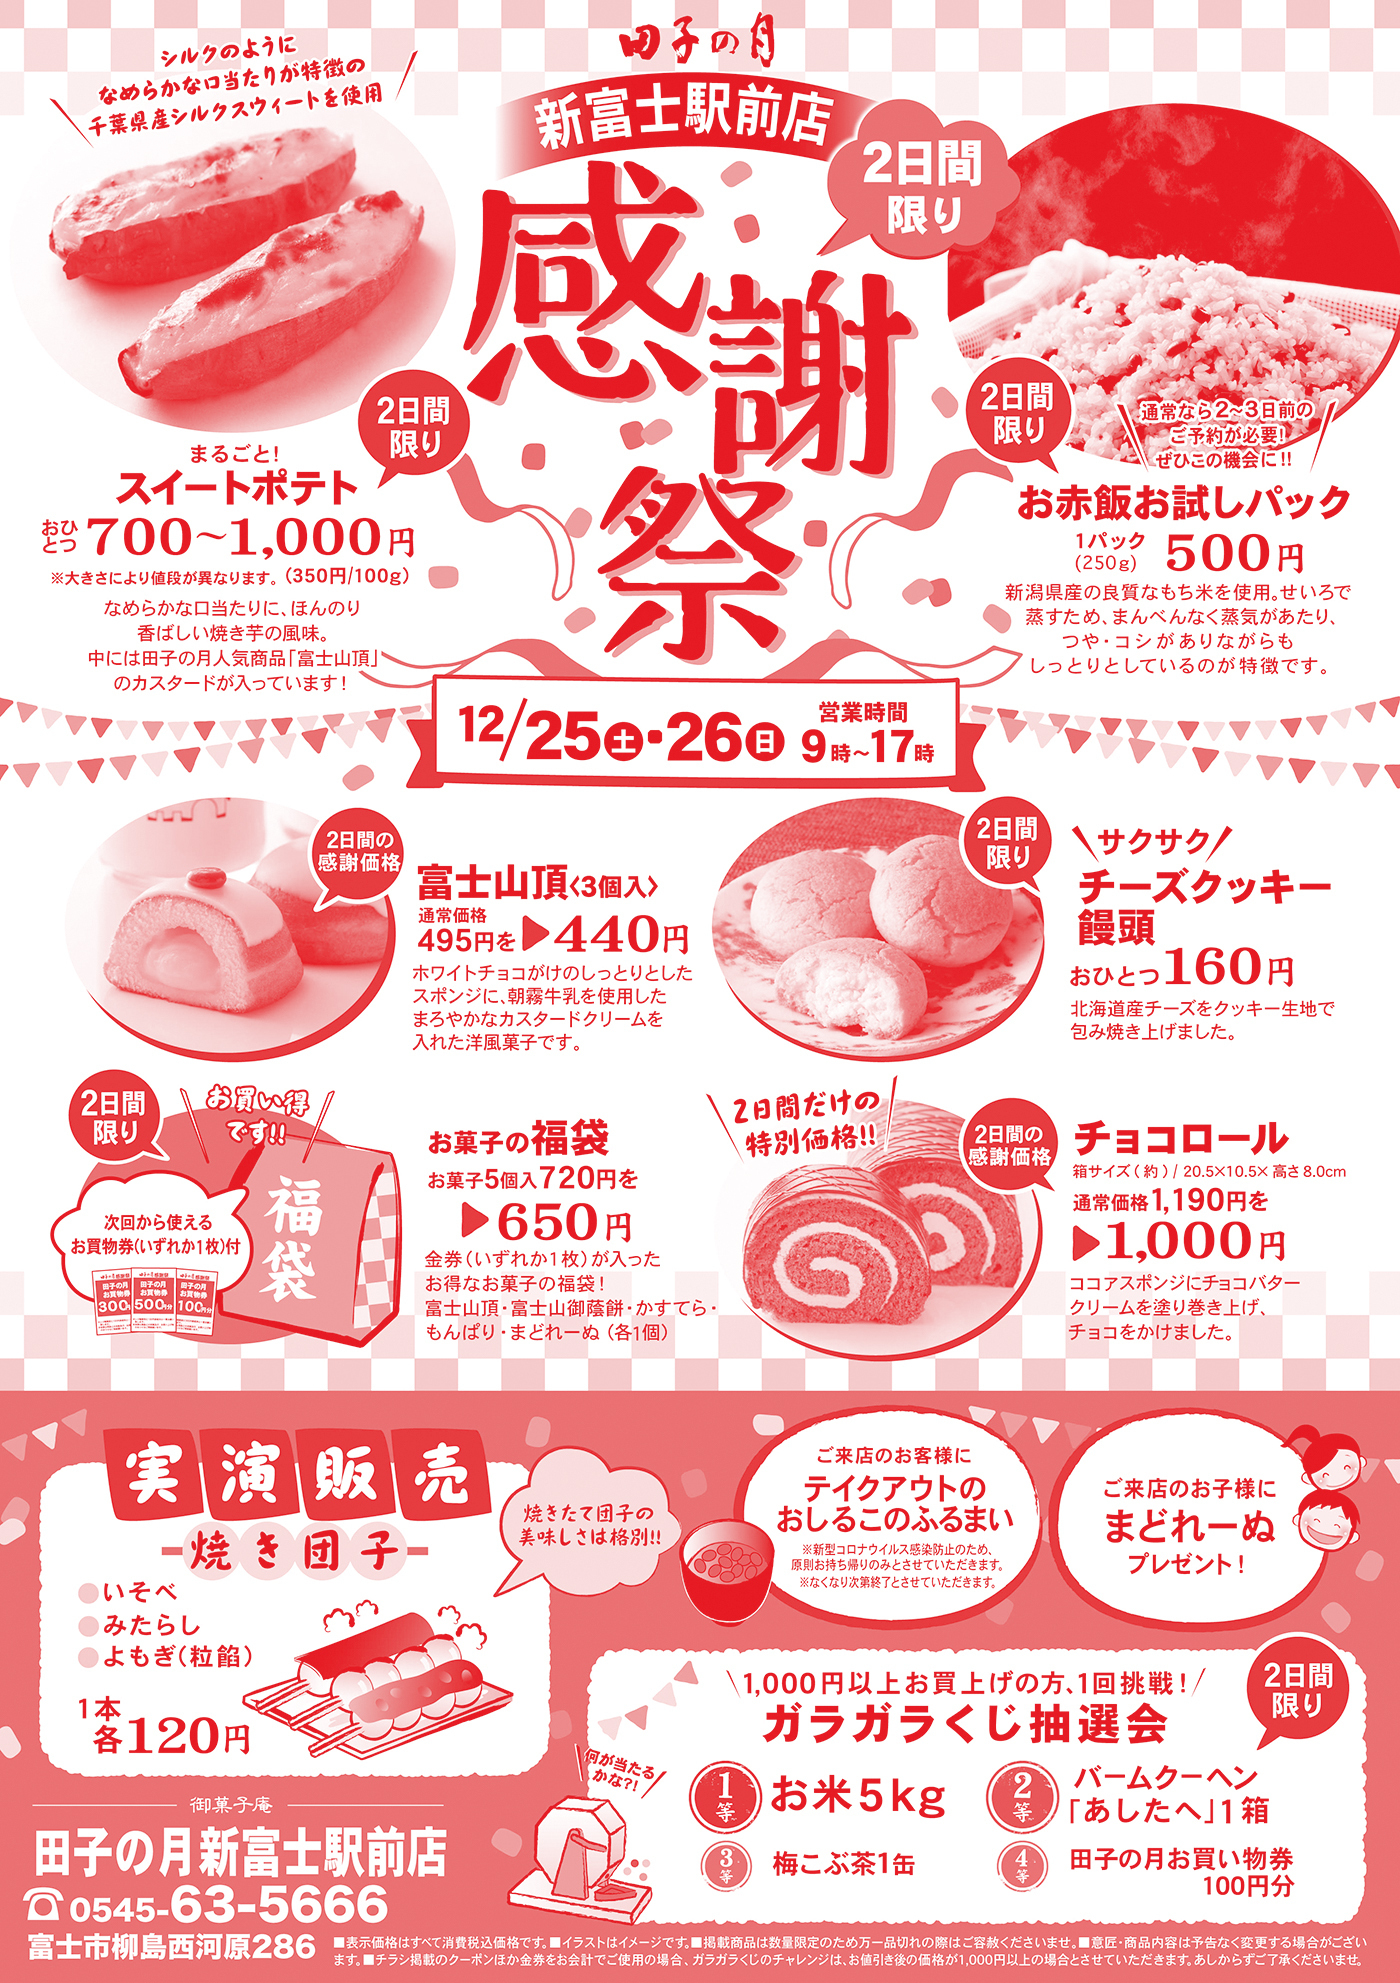 田子の月新富士駅前店2日限り感謝祭シルクのようになめらかな口当たりが特徴の千葉県産シルクスイートを仕様まるごと！スイートポテトおひとつ700円〜1,000円※大きさにより値段が異なります。(350円/100g) なめらかな口当たりに、ほんのり香ばしい焼き芋の風味。中には田子の月人気商品(富士山頂)のカスタードが入っています。通常なら2~3日前のご予約が必要！ぜひこの機会に！お赤飯お試しパック新潟県産の良質なもち米を使用。せいろで蒸すため、まんべんなく蒸気があたり、つや・コシがありながらもしっとりとしているのが特徴です。12/25土26日営業時間9時〜17時2日間の感謝価格富士山頂(3個入)通常価格495円→440円ホワイトチョコがけのしっとりとしたスポンジに、朝霧牛乳を使用したまろやかなカスタードクリームを入れた洋菓子です。サクサクチーズクッキー饅頭おひとつ160円北海道チーズをクッキー生地で包み焼き上げました。お買い得です！次回から使えるお買物券(いずれか1枚)付お菓子の福袋お菓子5個入720円を650円金券(いずか1枚)が入ったお得なお菓子の福袋！富士山頂・富士山御蔭餅・かすてら・もんぱり・まどれーぬ(各1個)2日間の特別価格！チョコロール箱サイズ(約)/20.5×10.5×高さ8.0cm通常価格1,190円を1,000円ココアスポンジにチョコバタークリームを塗り上げ、チョコをかけました。実演販売焼き団子いそべみたらしよもぎ(粒餡)1本1各120円焼きたて団子の美味しさは格別！ご来店のお客様にテイクアウトのおしるこのふるまい※新型コロナウイルス感染防止のため、原則お持ち帰りのみとさせていただきます。※無くなり次第終了とさせていただきます。ご来店のお子様にまどれーぬプレゼント！1,000円以上お買い上げの方、1回挑戦！ガラガラくじ抽選会1等お米5kg2等バームクーヘン(あしたへ)1箱3等梅こぶ茶1缶4等田子の月お買い物券100円分御菓子庵田子の月新富士駅前店0545-63-5666富士市柳島西河原286■表示価格はすべて消費税込価格です。■イラストはイメージです。■掲載商品は数量い限定のため万一品切れの際はご容赦ください。■意匠・商品内容は予告なく変更する場合がございます。■チラシ掲載のクーポンほか金券をお会計でご使用の場合、ガラガラくじのチャレンジは、お値引き後の価格が1,000円以上の場合とさせていただきます。あしからずご了承くださいませ。